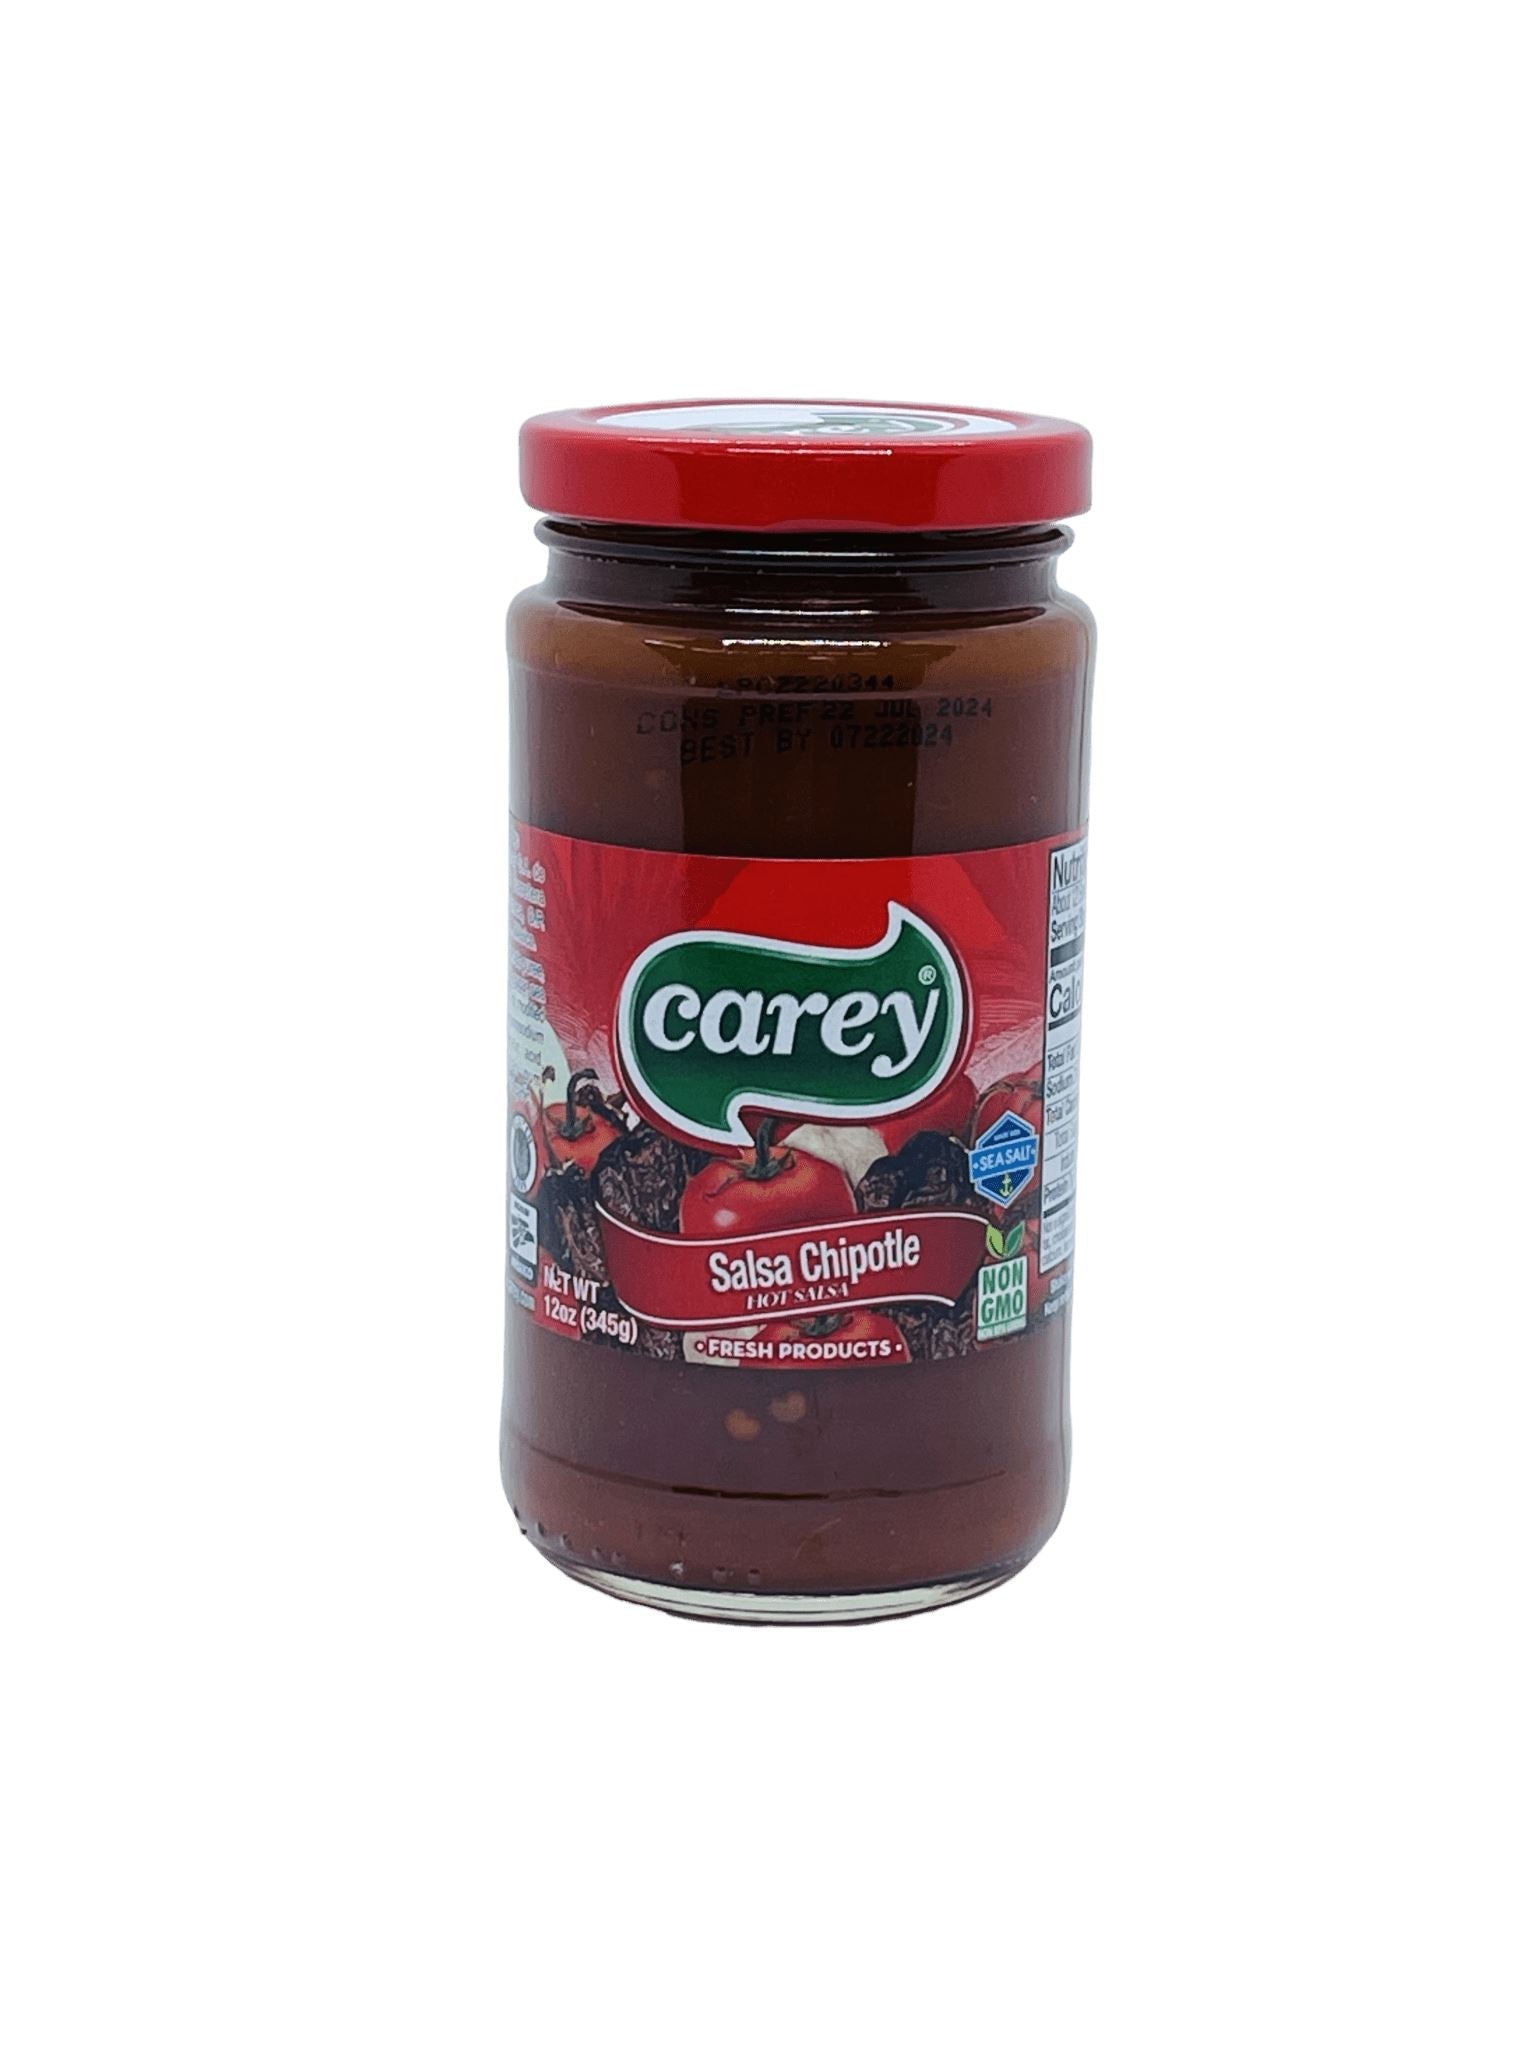 Carey Chipotle Sauce 345g Sauces Carey 